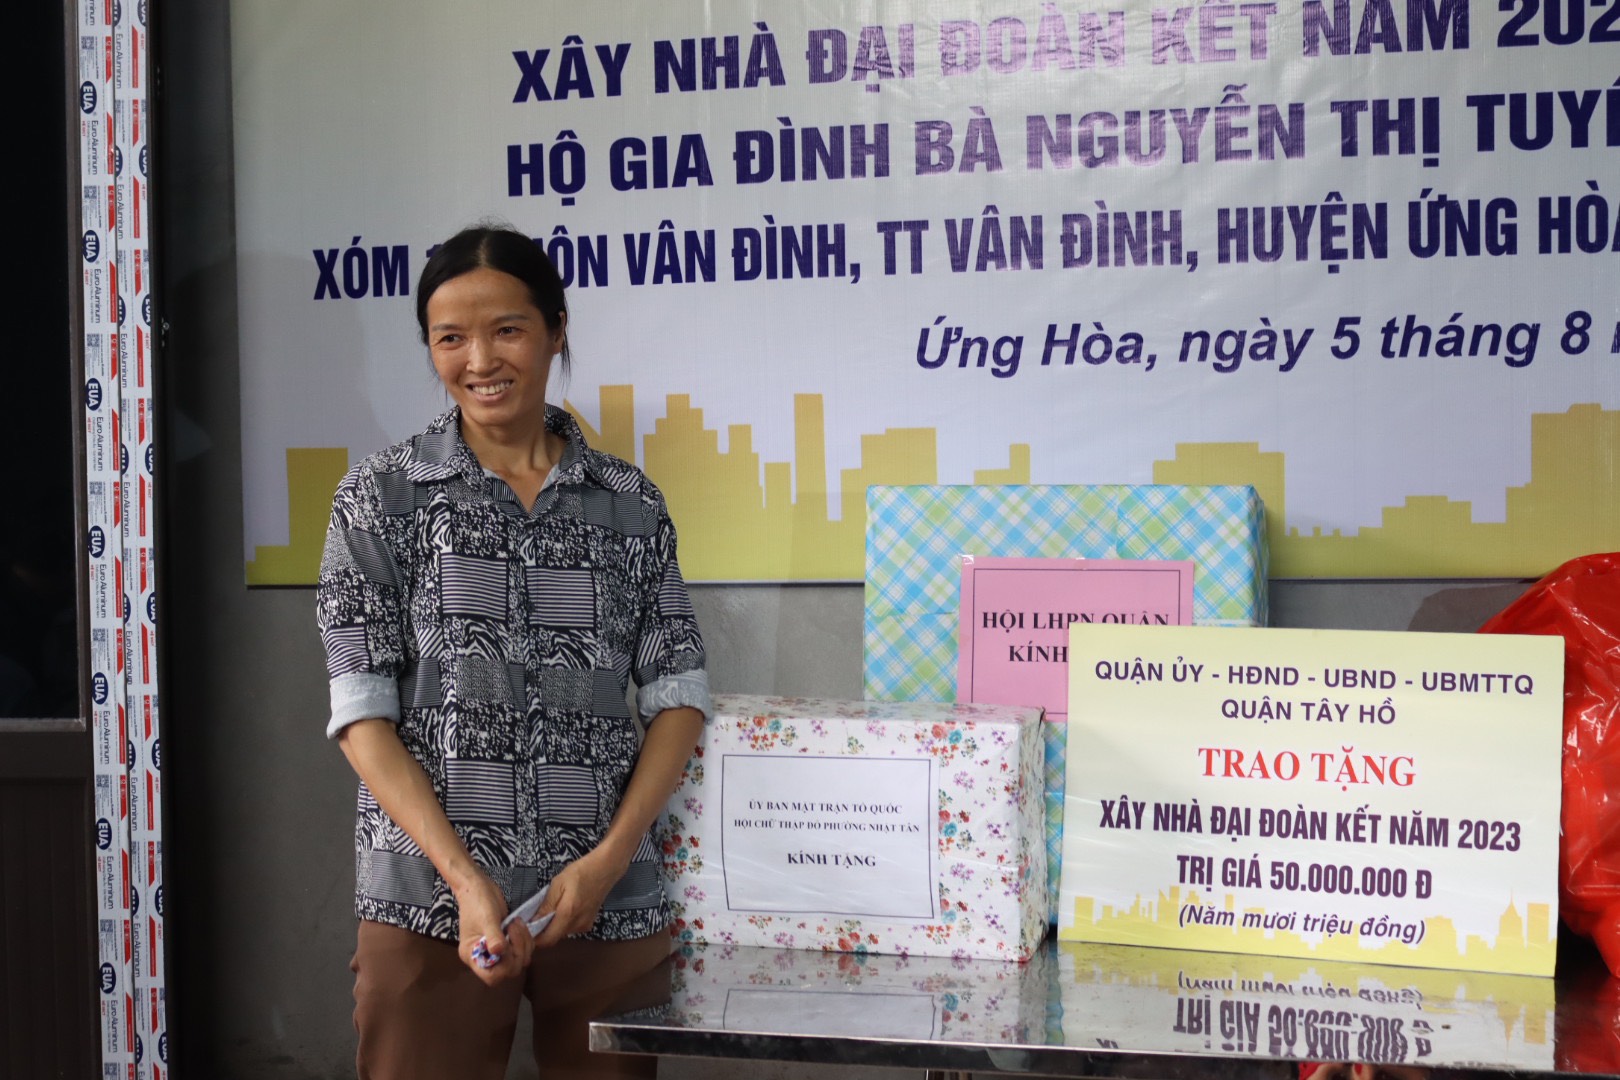 Chị Nguyễn Thị Tuyến bày tỏ sự vui mừng, xúc động và cám ơn các cấp, các ngành đã quan tâm hỗ trợ gia đình xây dựng, sửa chữa lại nhà.